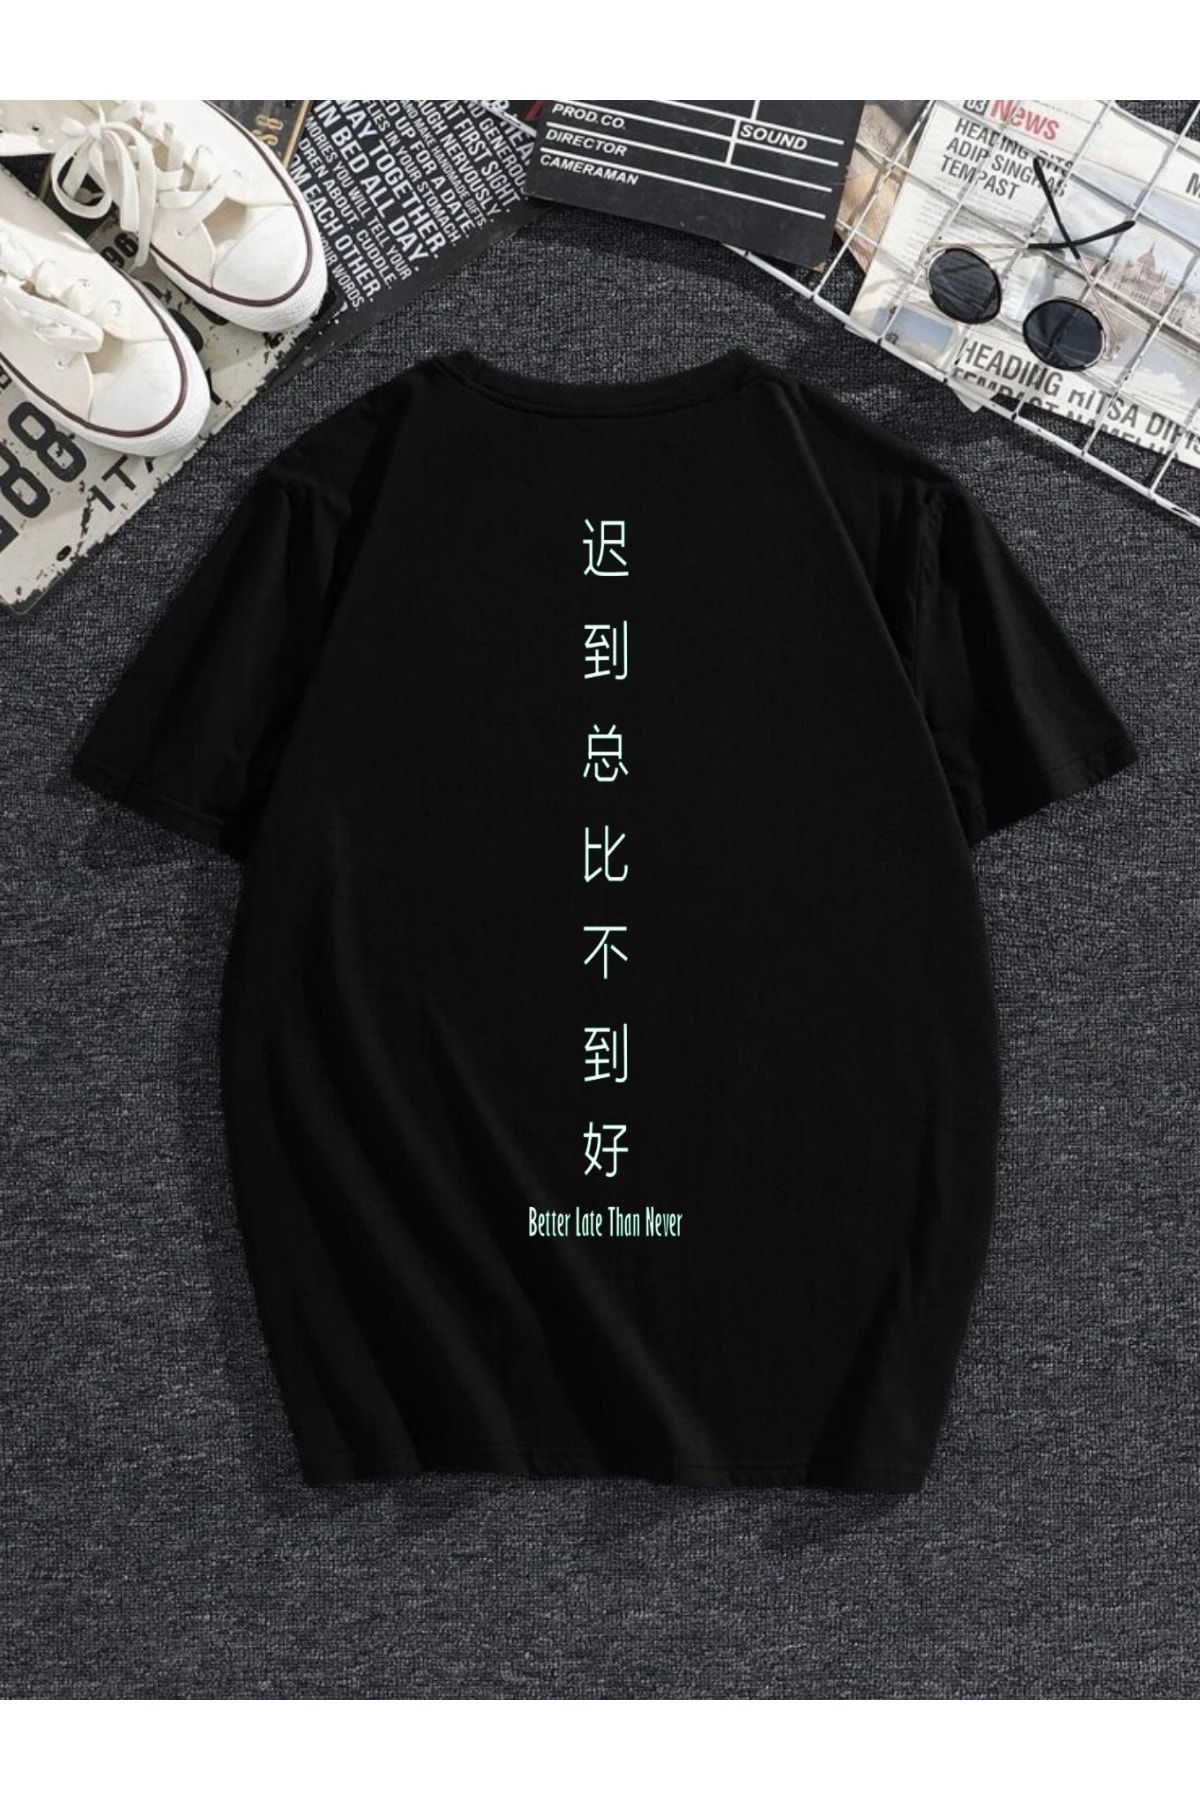 MODADEER Unisex Sırtta Japonca Yazı Oversize Tshirt